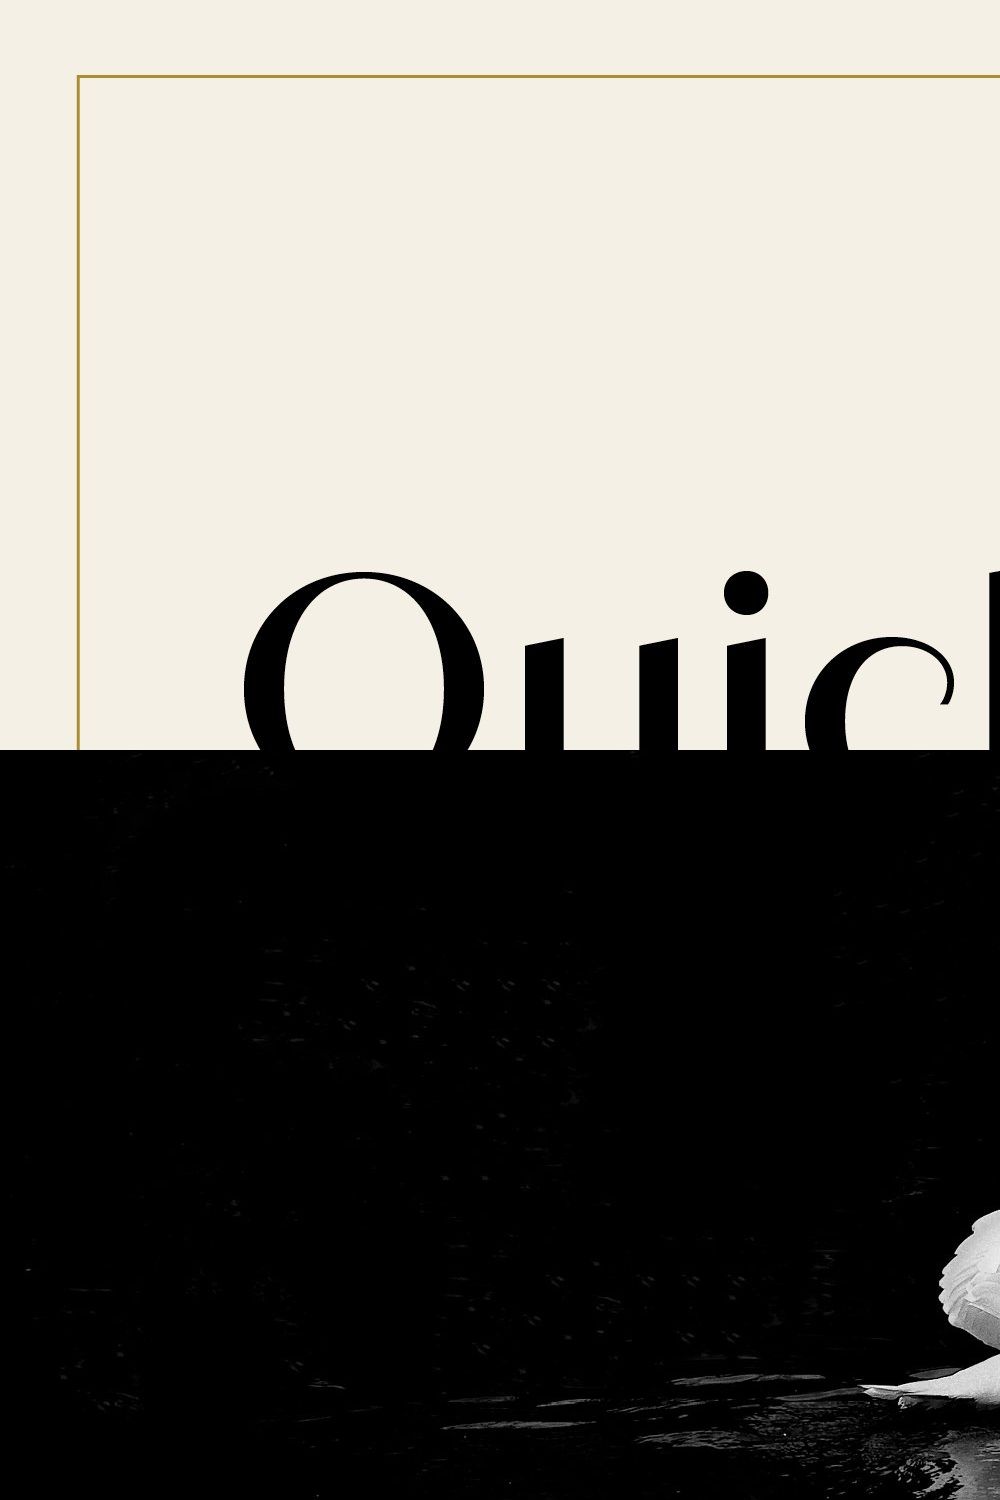 Quiche Sans Font Family pinterest preview image.